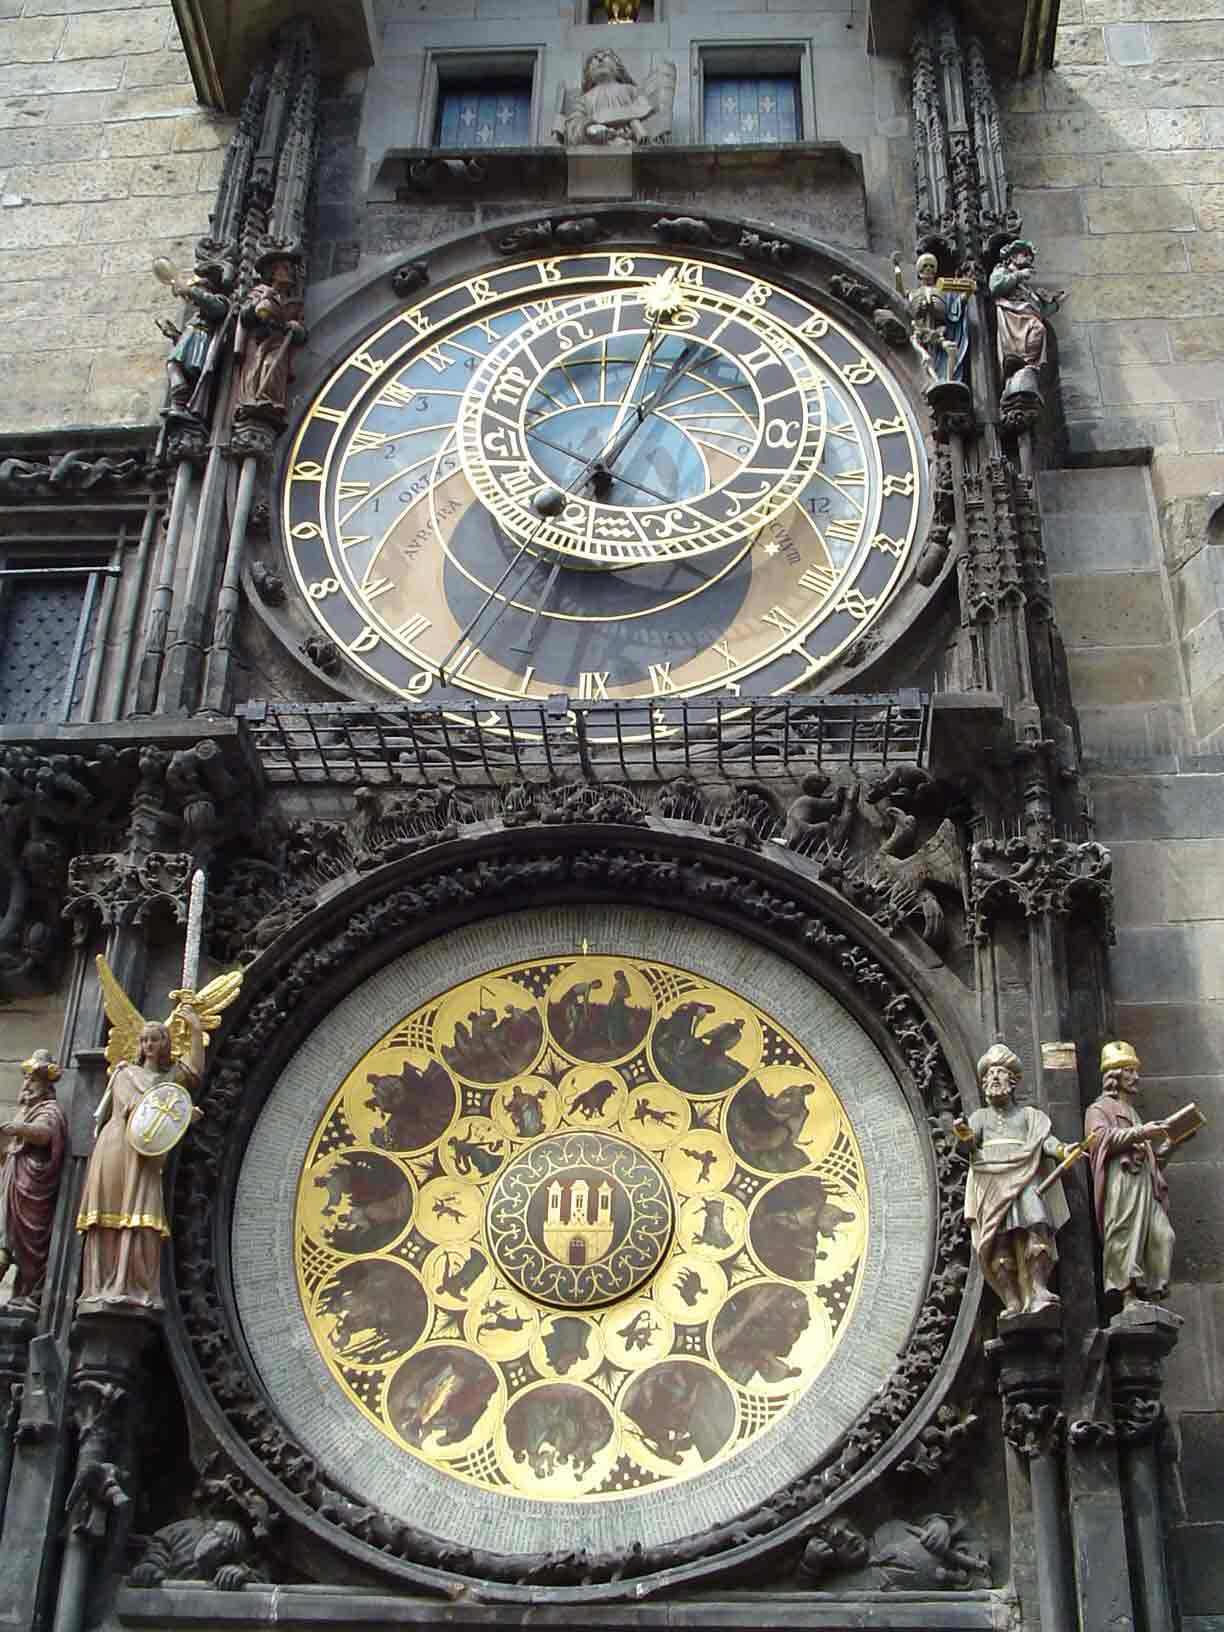 Republique Tcheque Praga - orologio